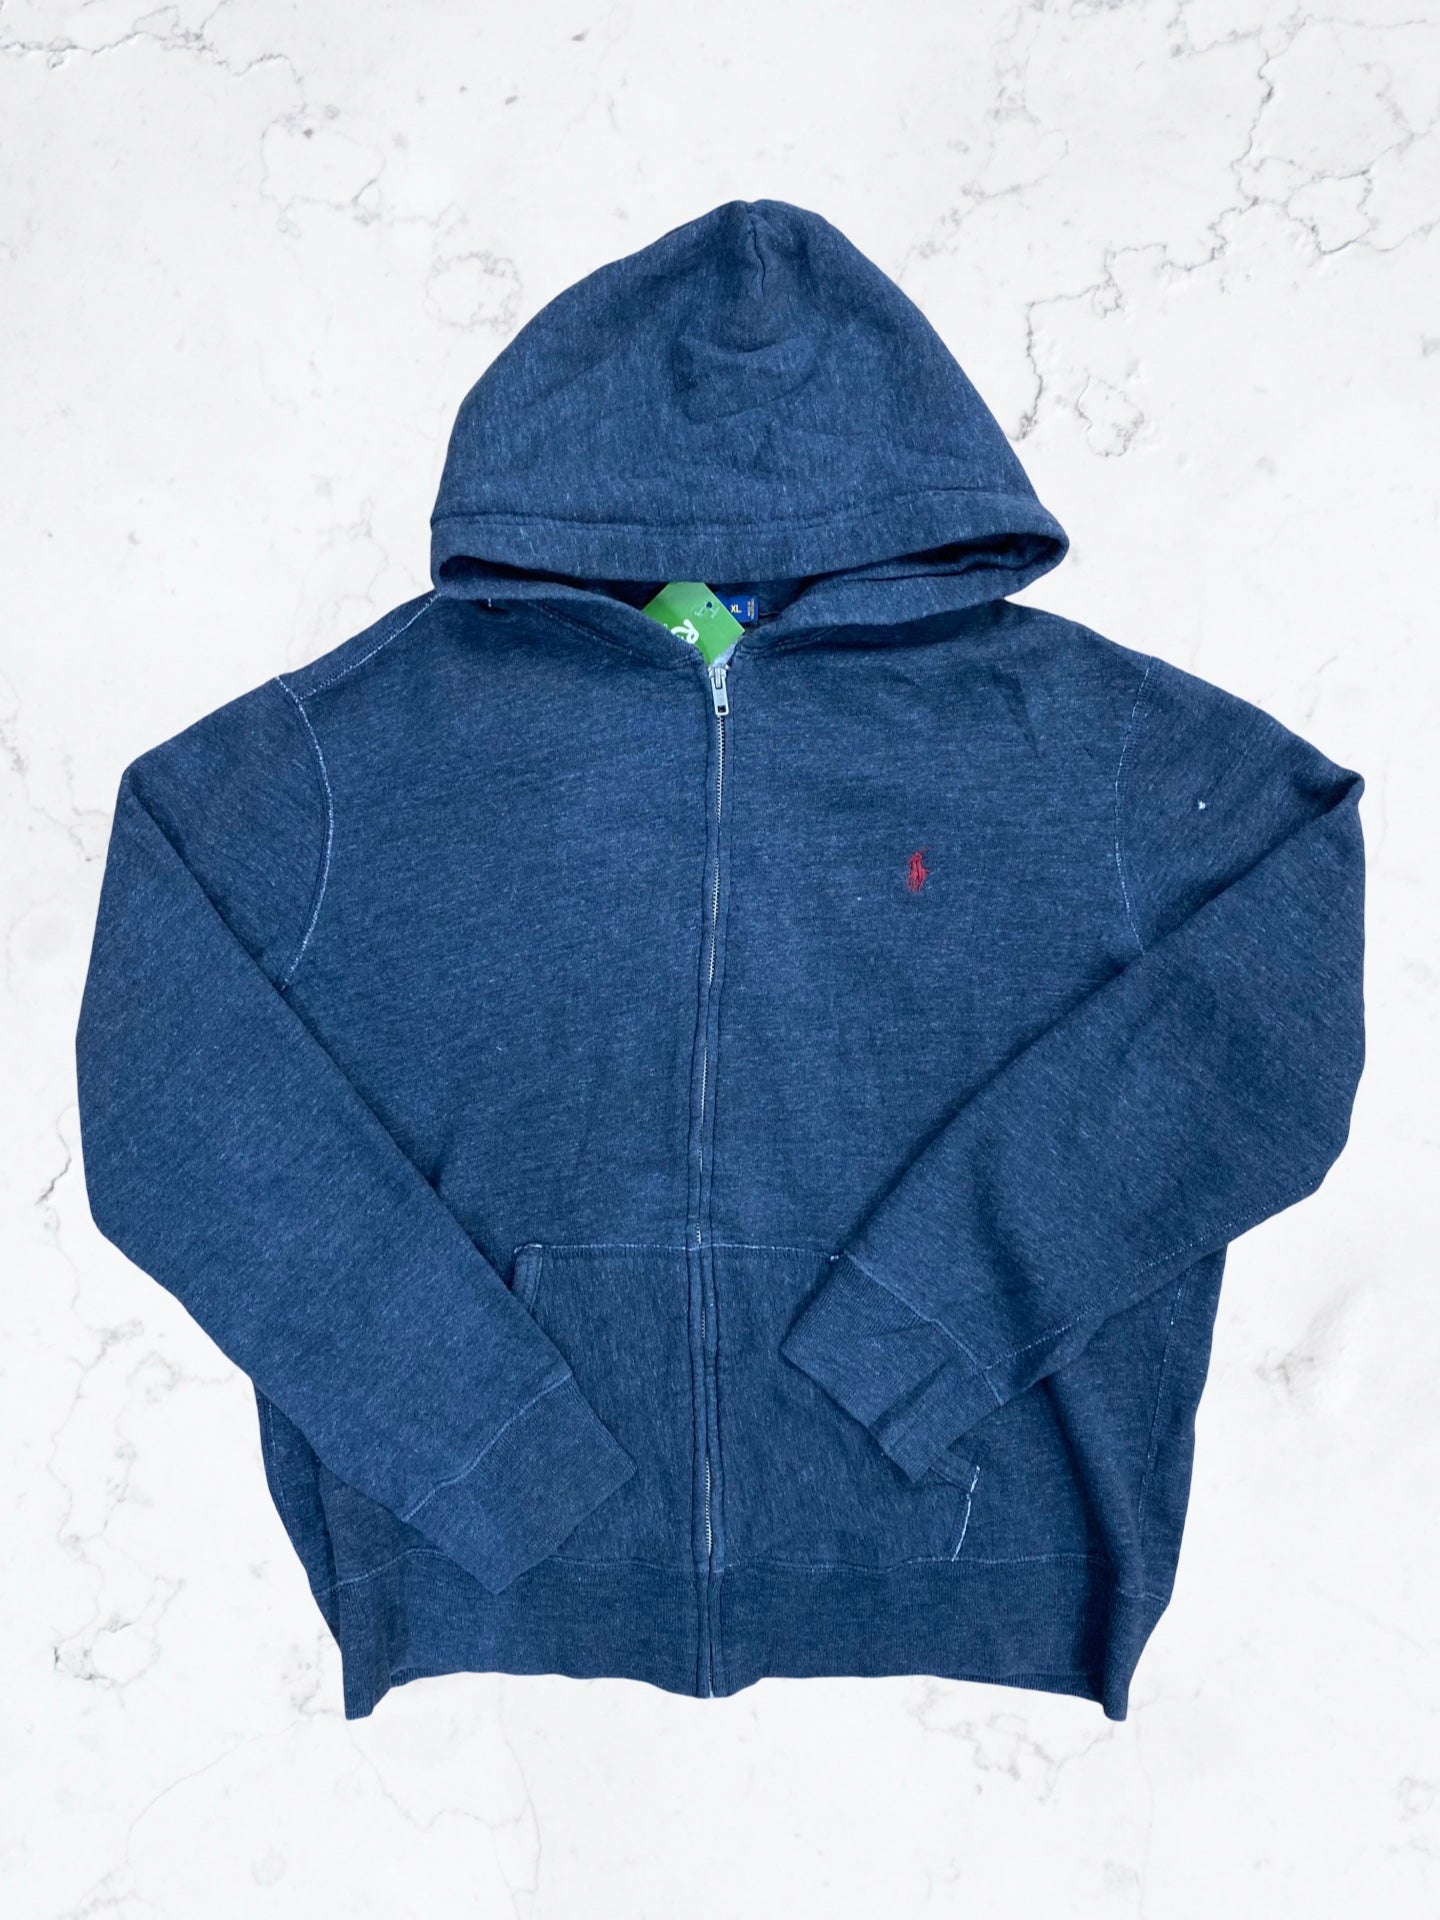 Ralph Lauren Polo Zip up hoodie